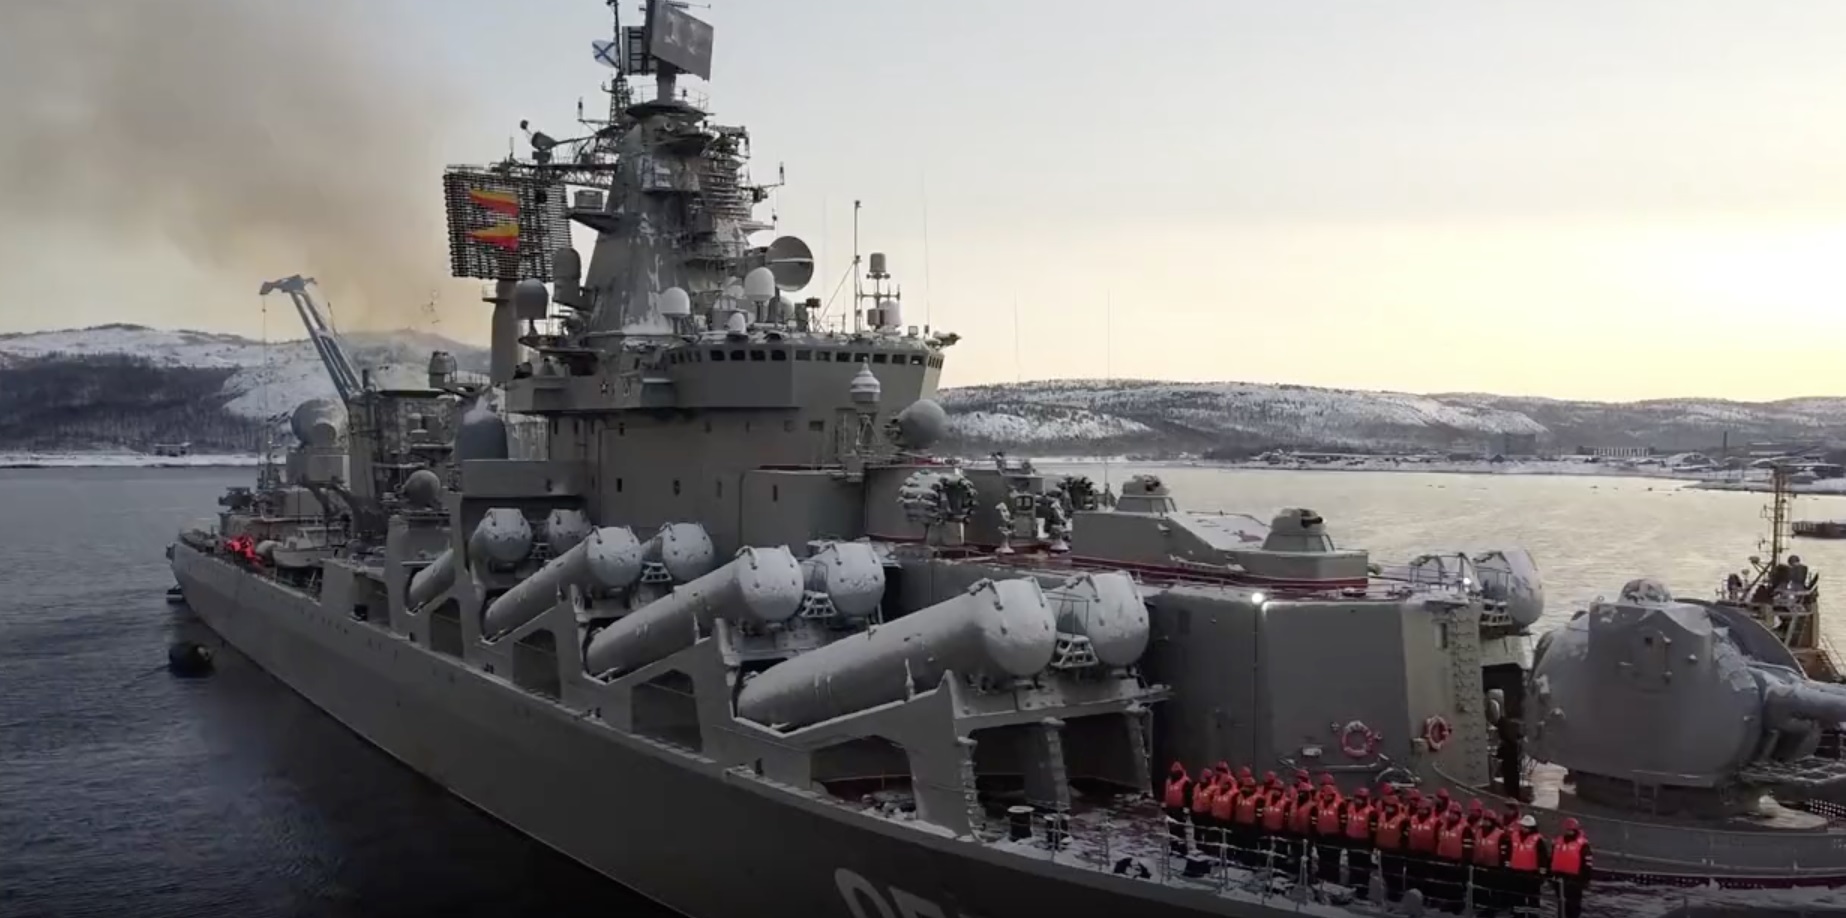 Le coiseur lance-missiles russe Maréchal Ustinov quitte son port-base de Severomorsk